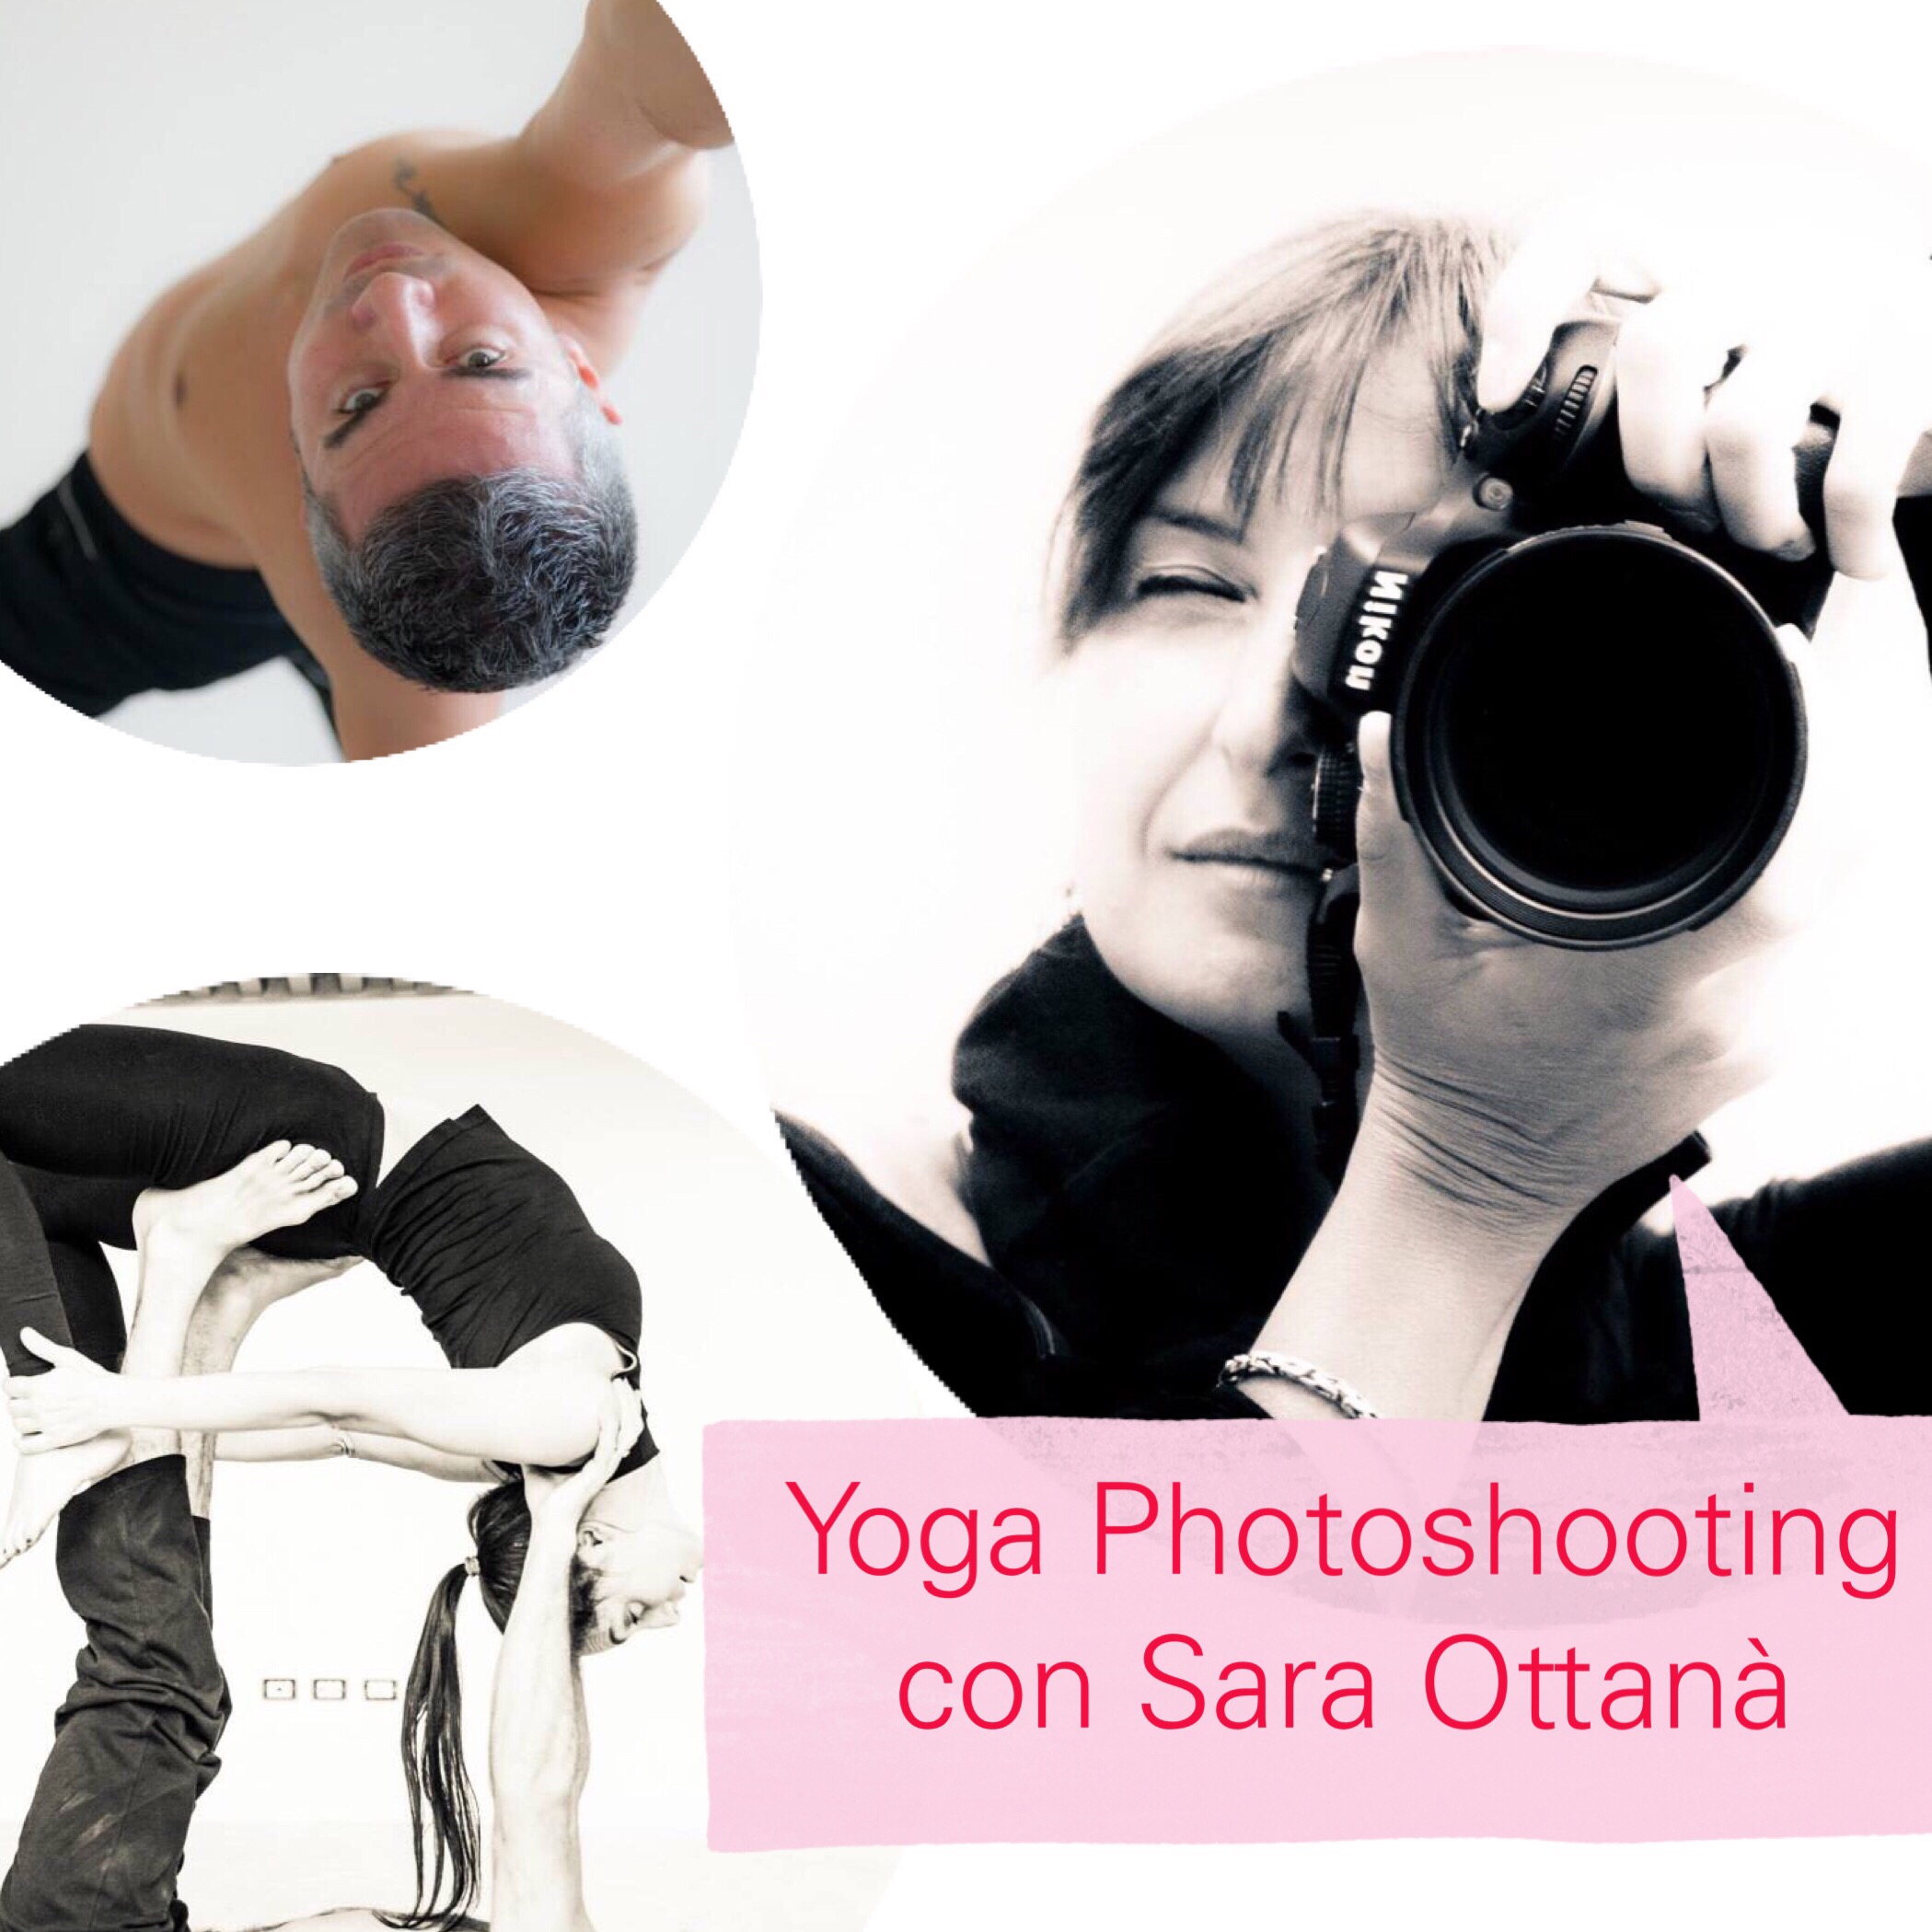 Yoga photoshooting con Sarà Ottanà per praticanti e insegnanti